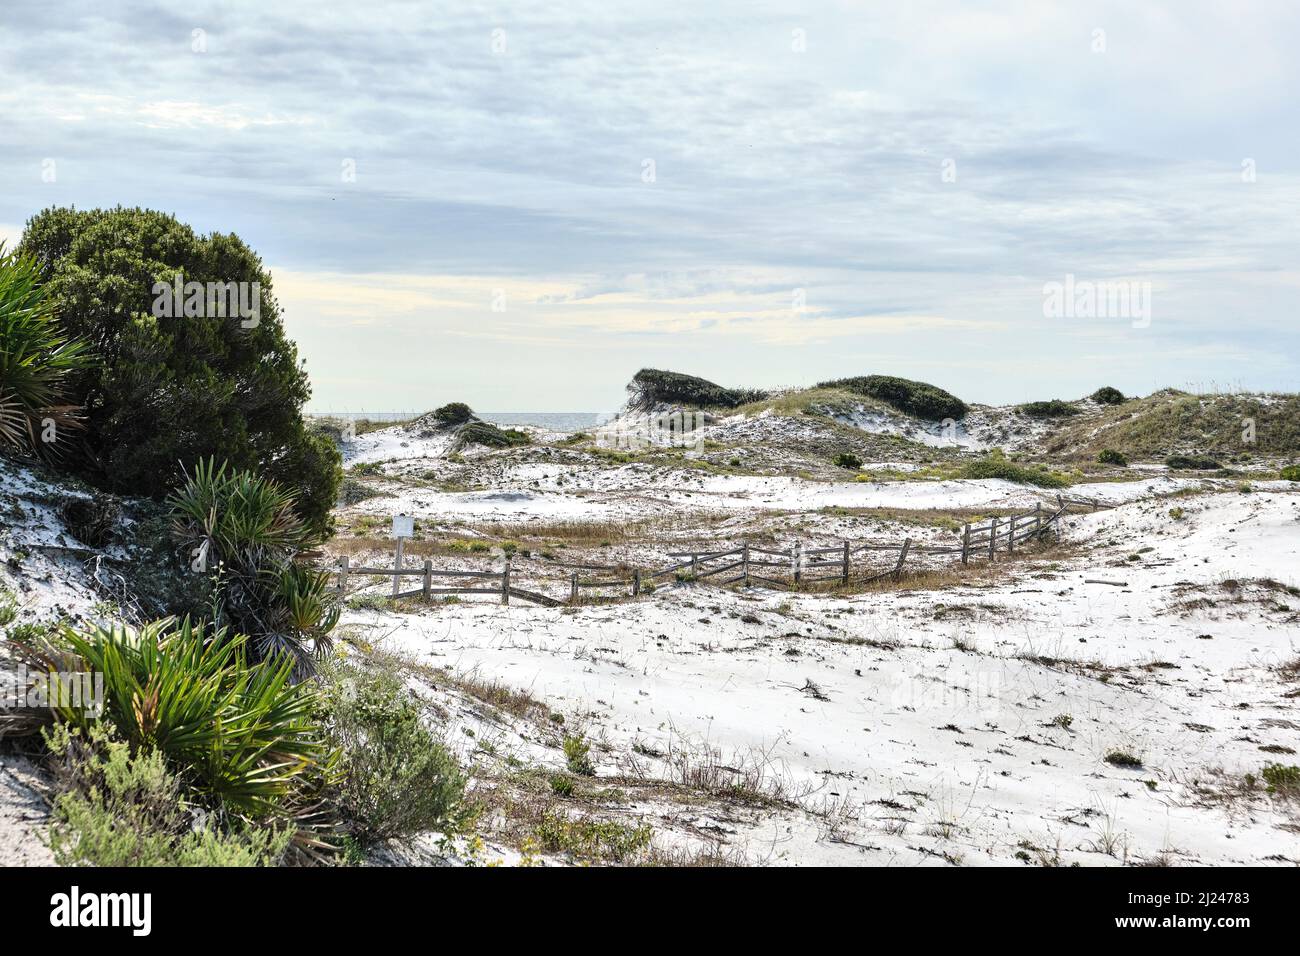 Les dunes de sable blanc de la côte de Floride et une barrière de chemin de fer séparée près de la plage de la côte du golfe de Floride à Watersun Florida, États-Unis. Banque D'Images